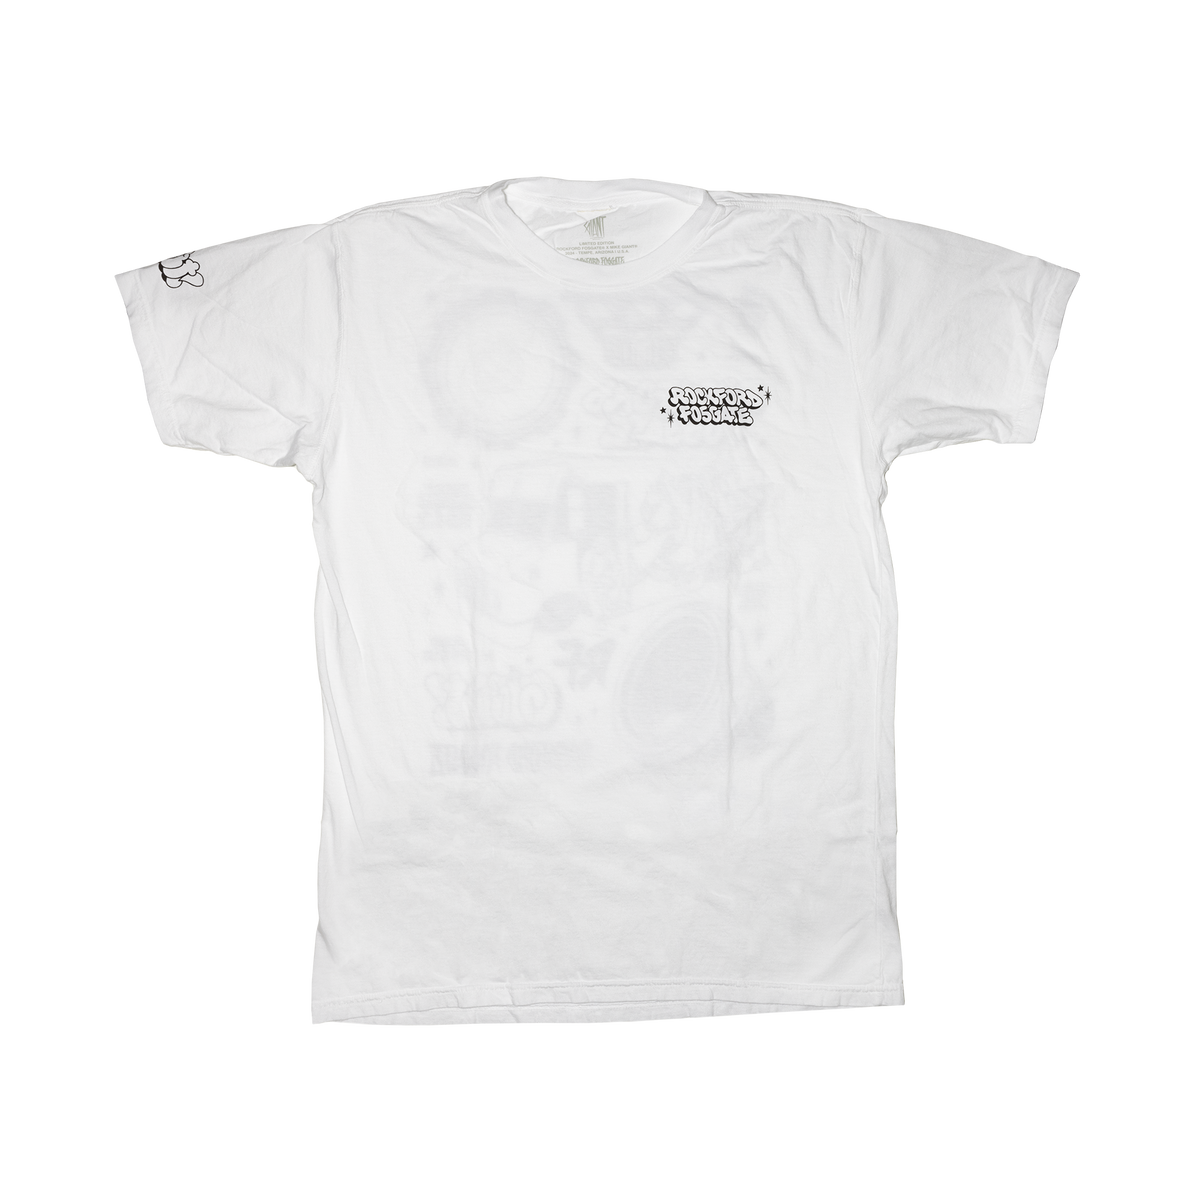 Mike Giant x Rockford Fosgate T-Shirt: XL(POP-GIANTT-XL)